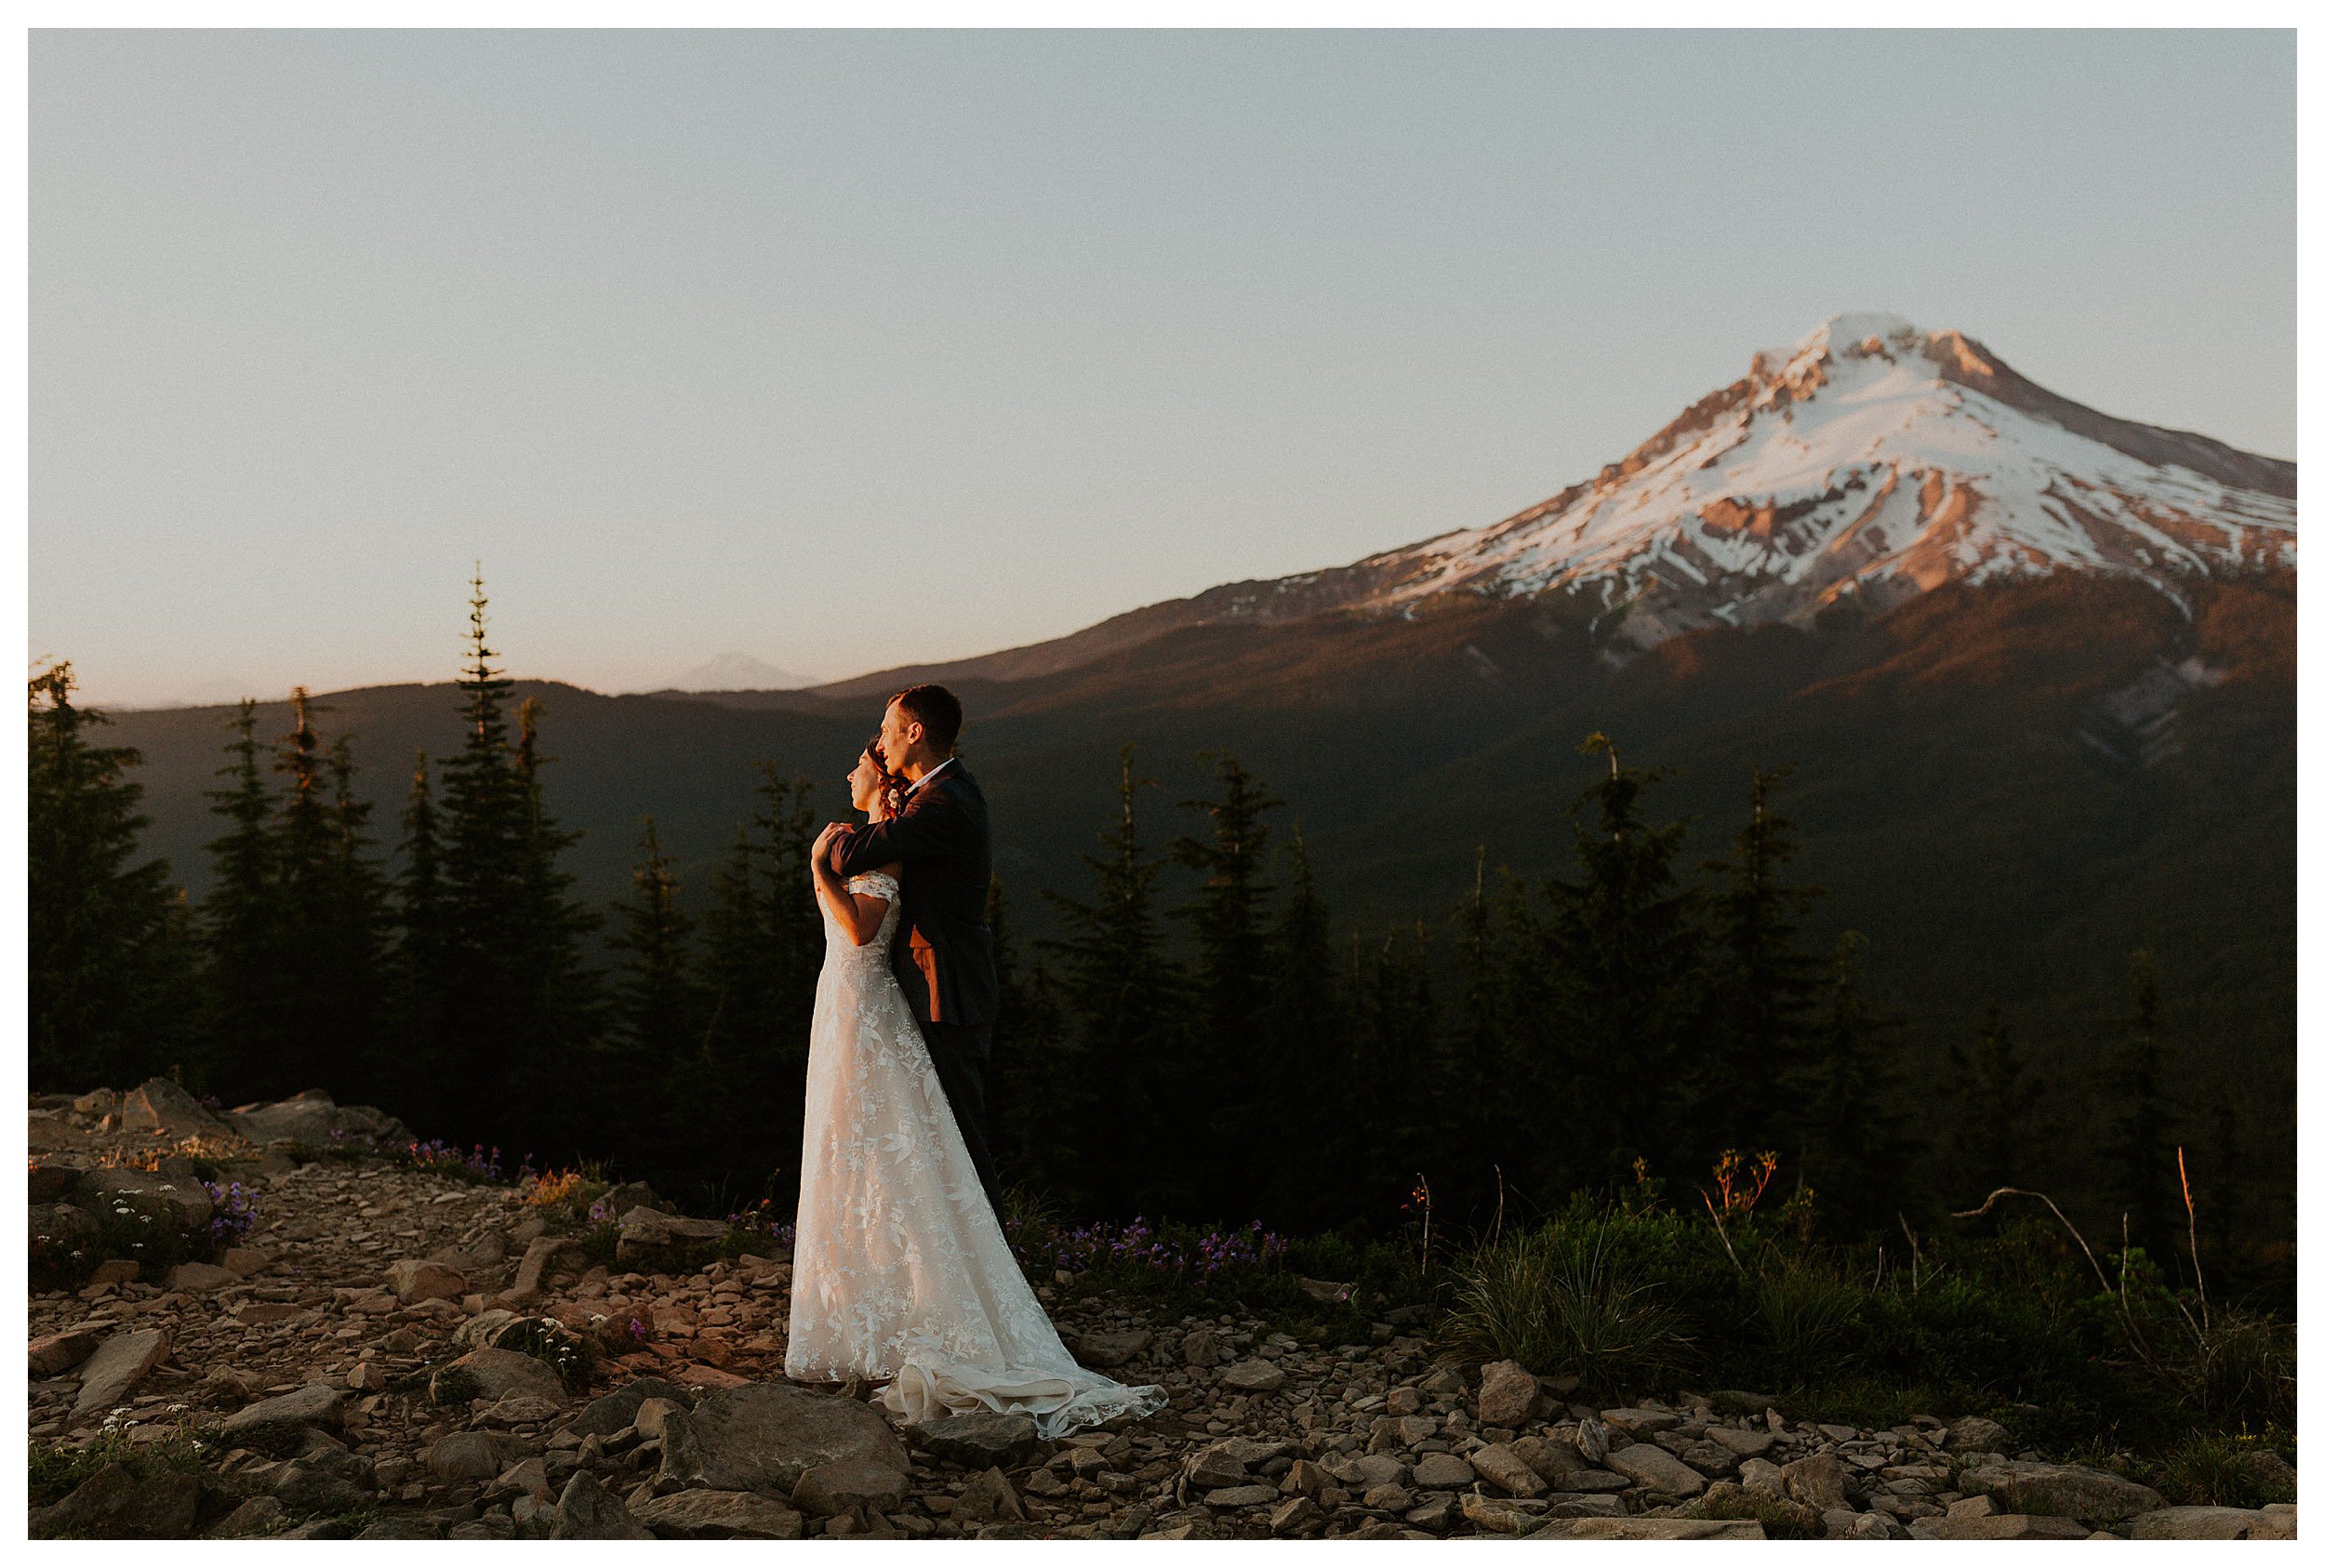 bride and groom hugging mount hood landscape

